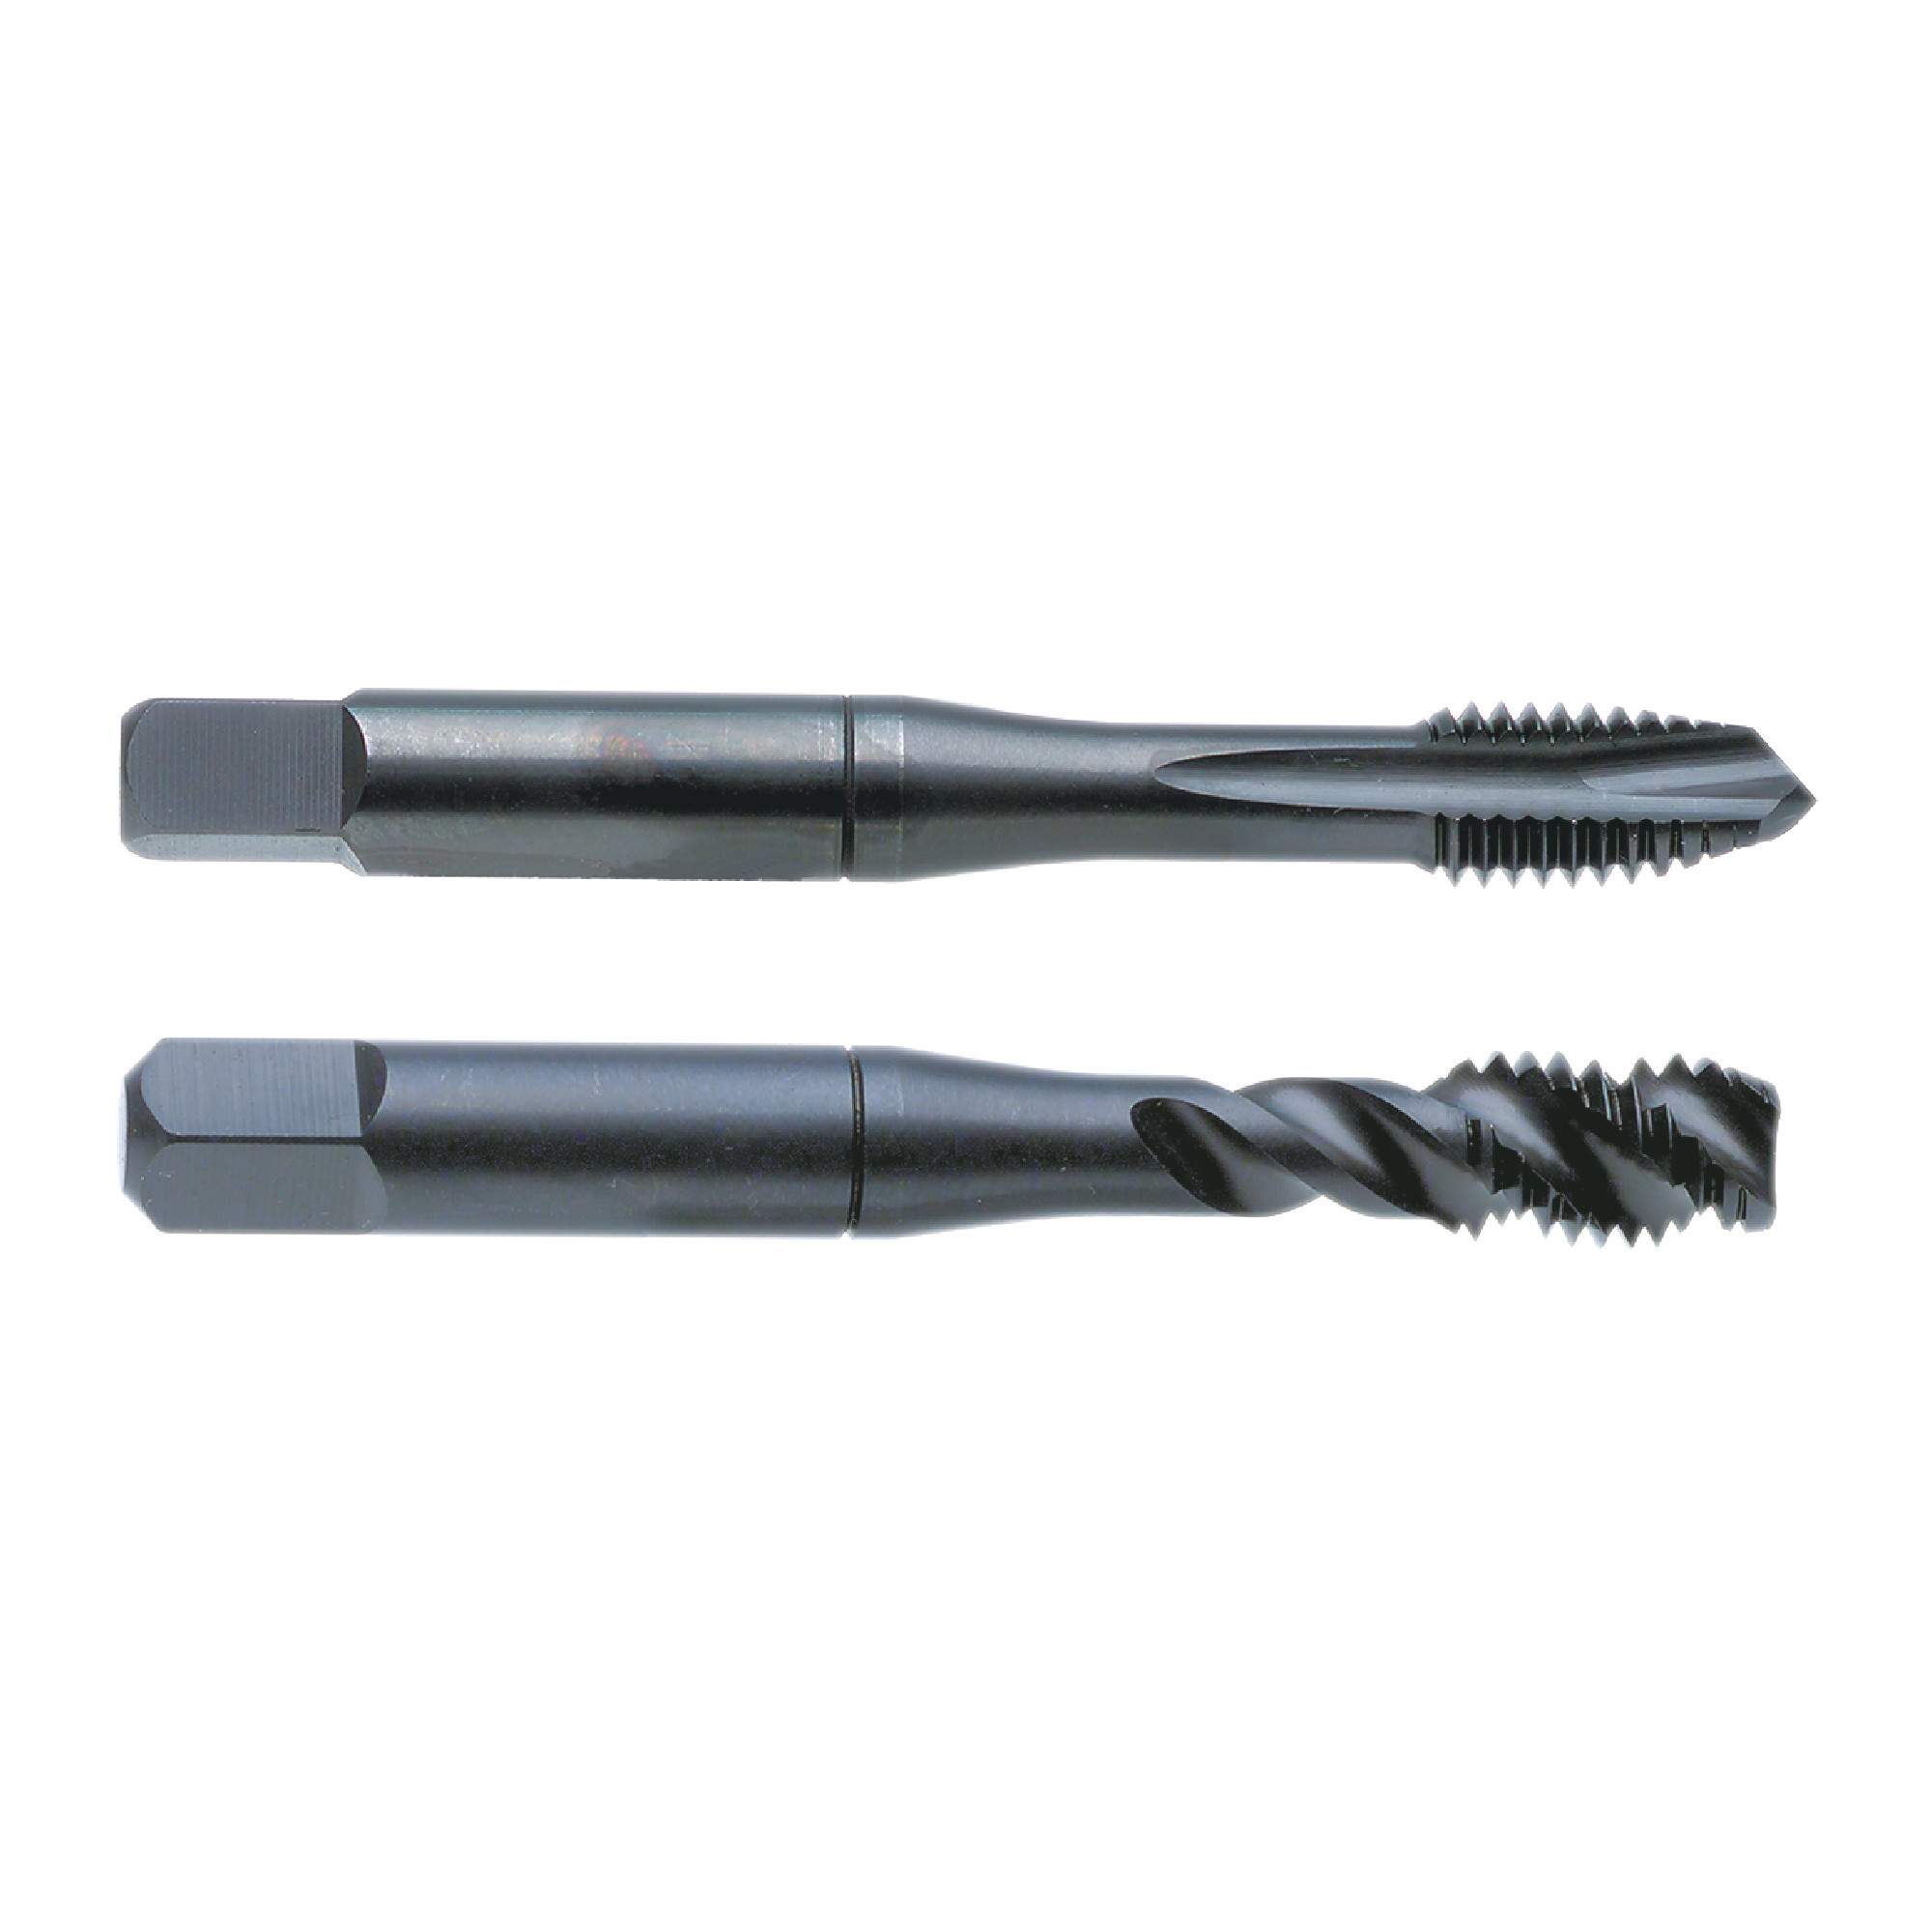 Nachi 3mmX0.5mm D3 VTP Cobalt/Vanadium High Speed Steel 3 Flute Spiral Pointed Plug Tap